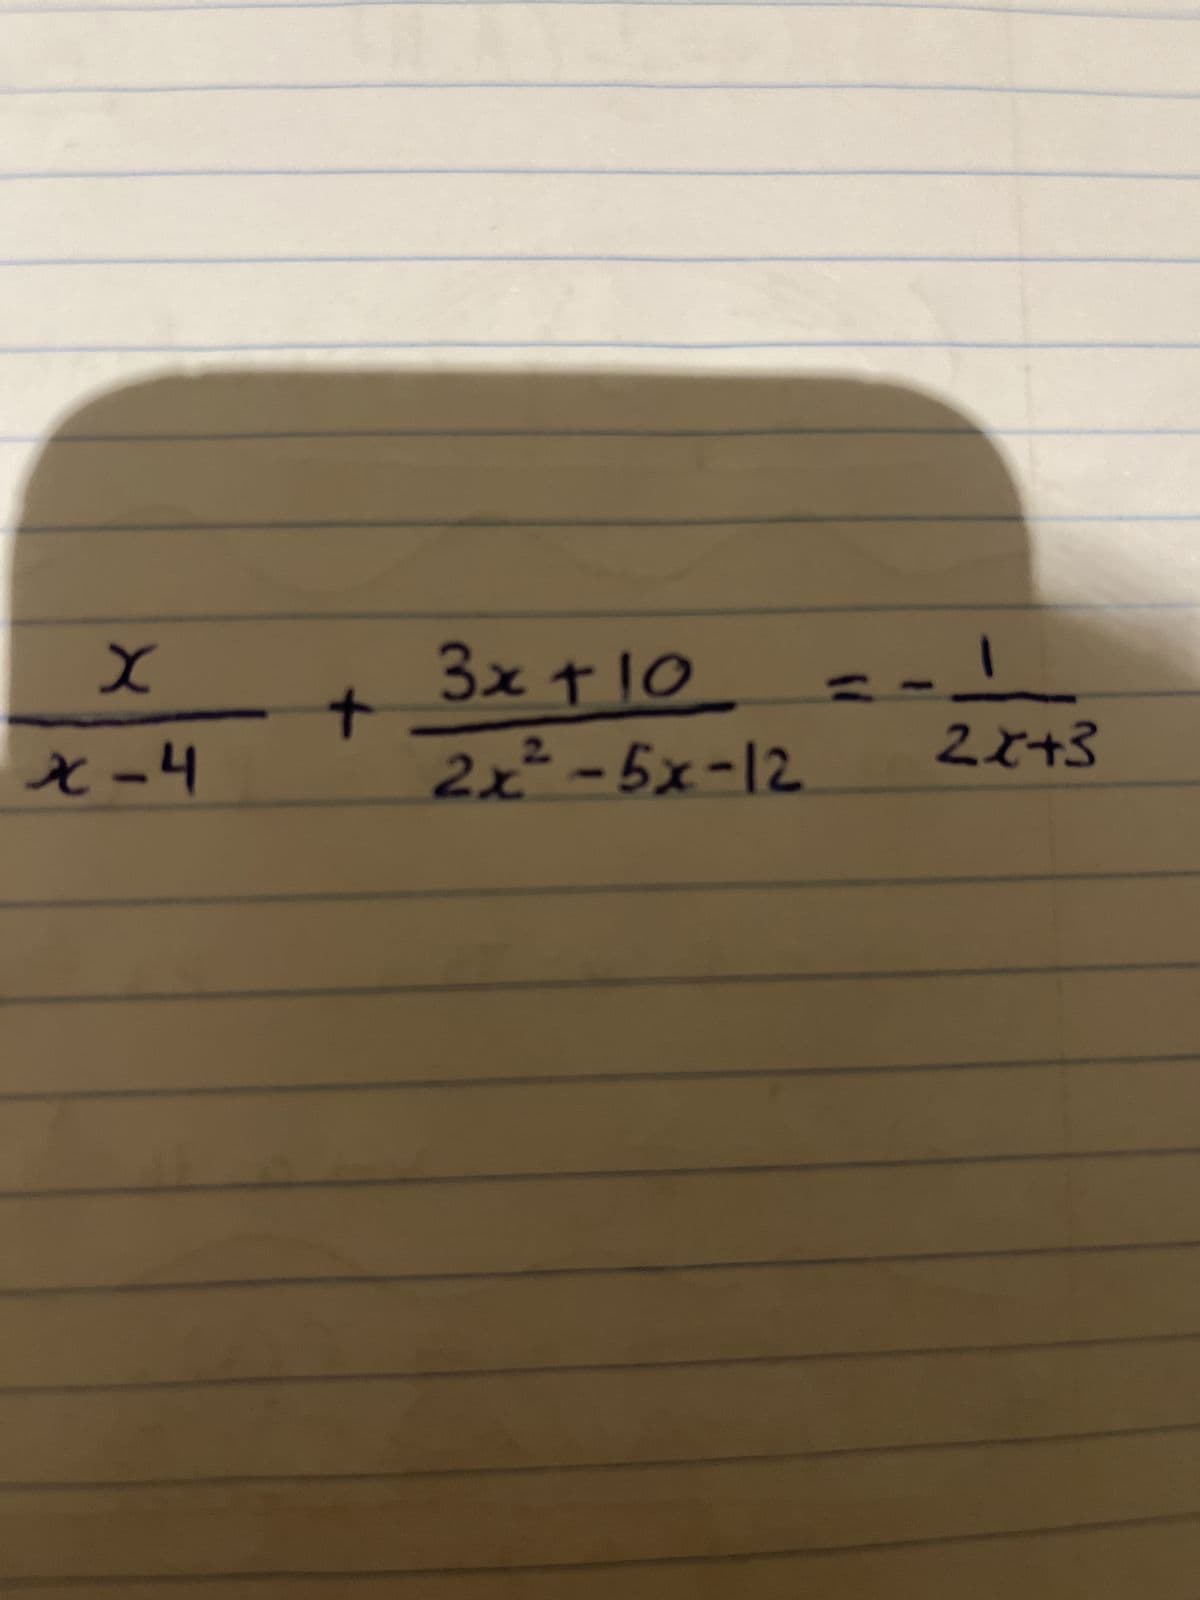 X
x-4
+
1
3x + 10
2x²-5x-12
22+3